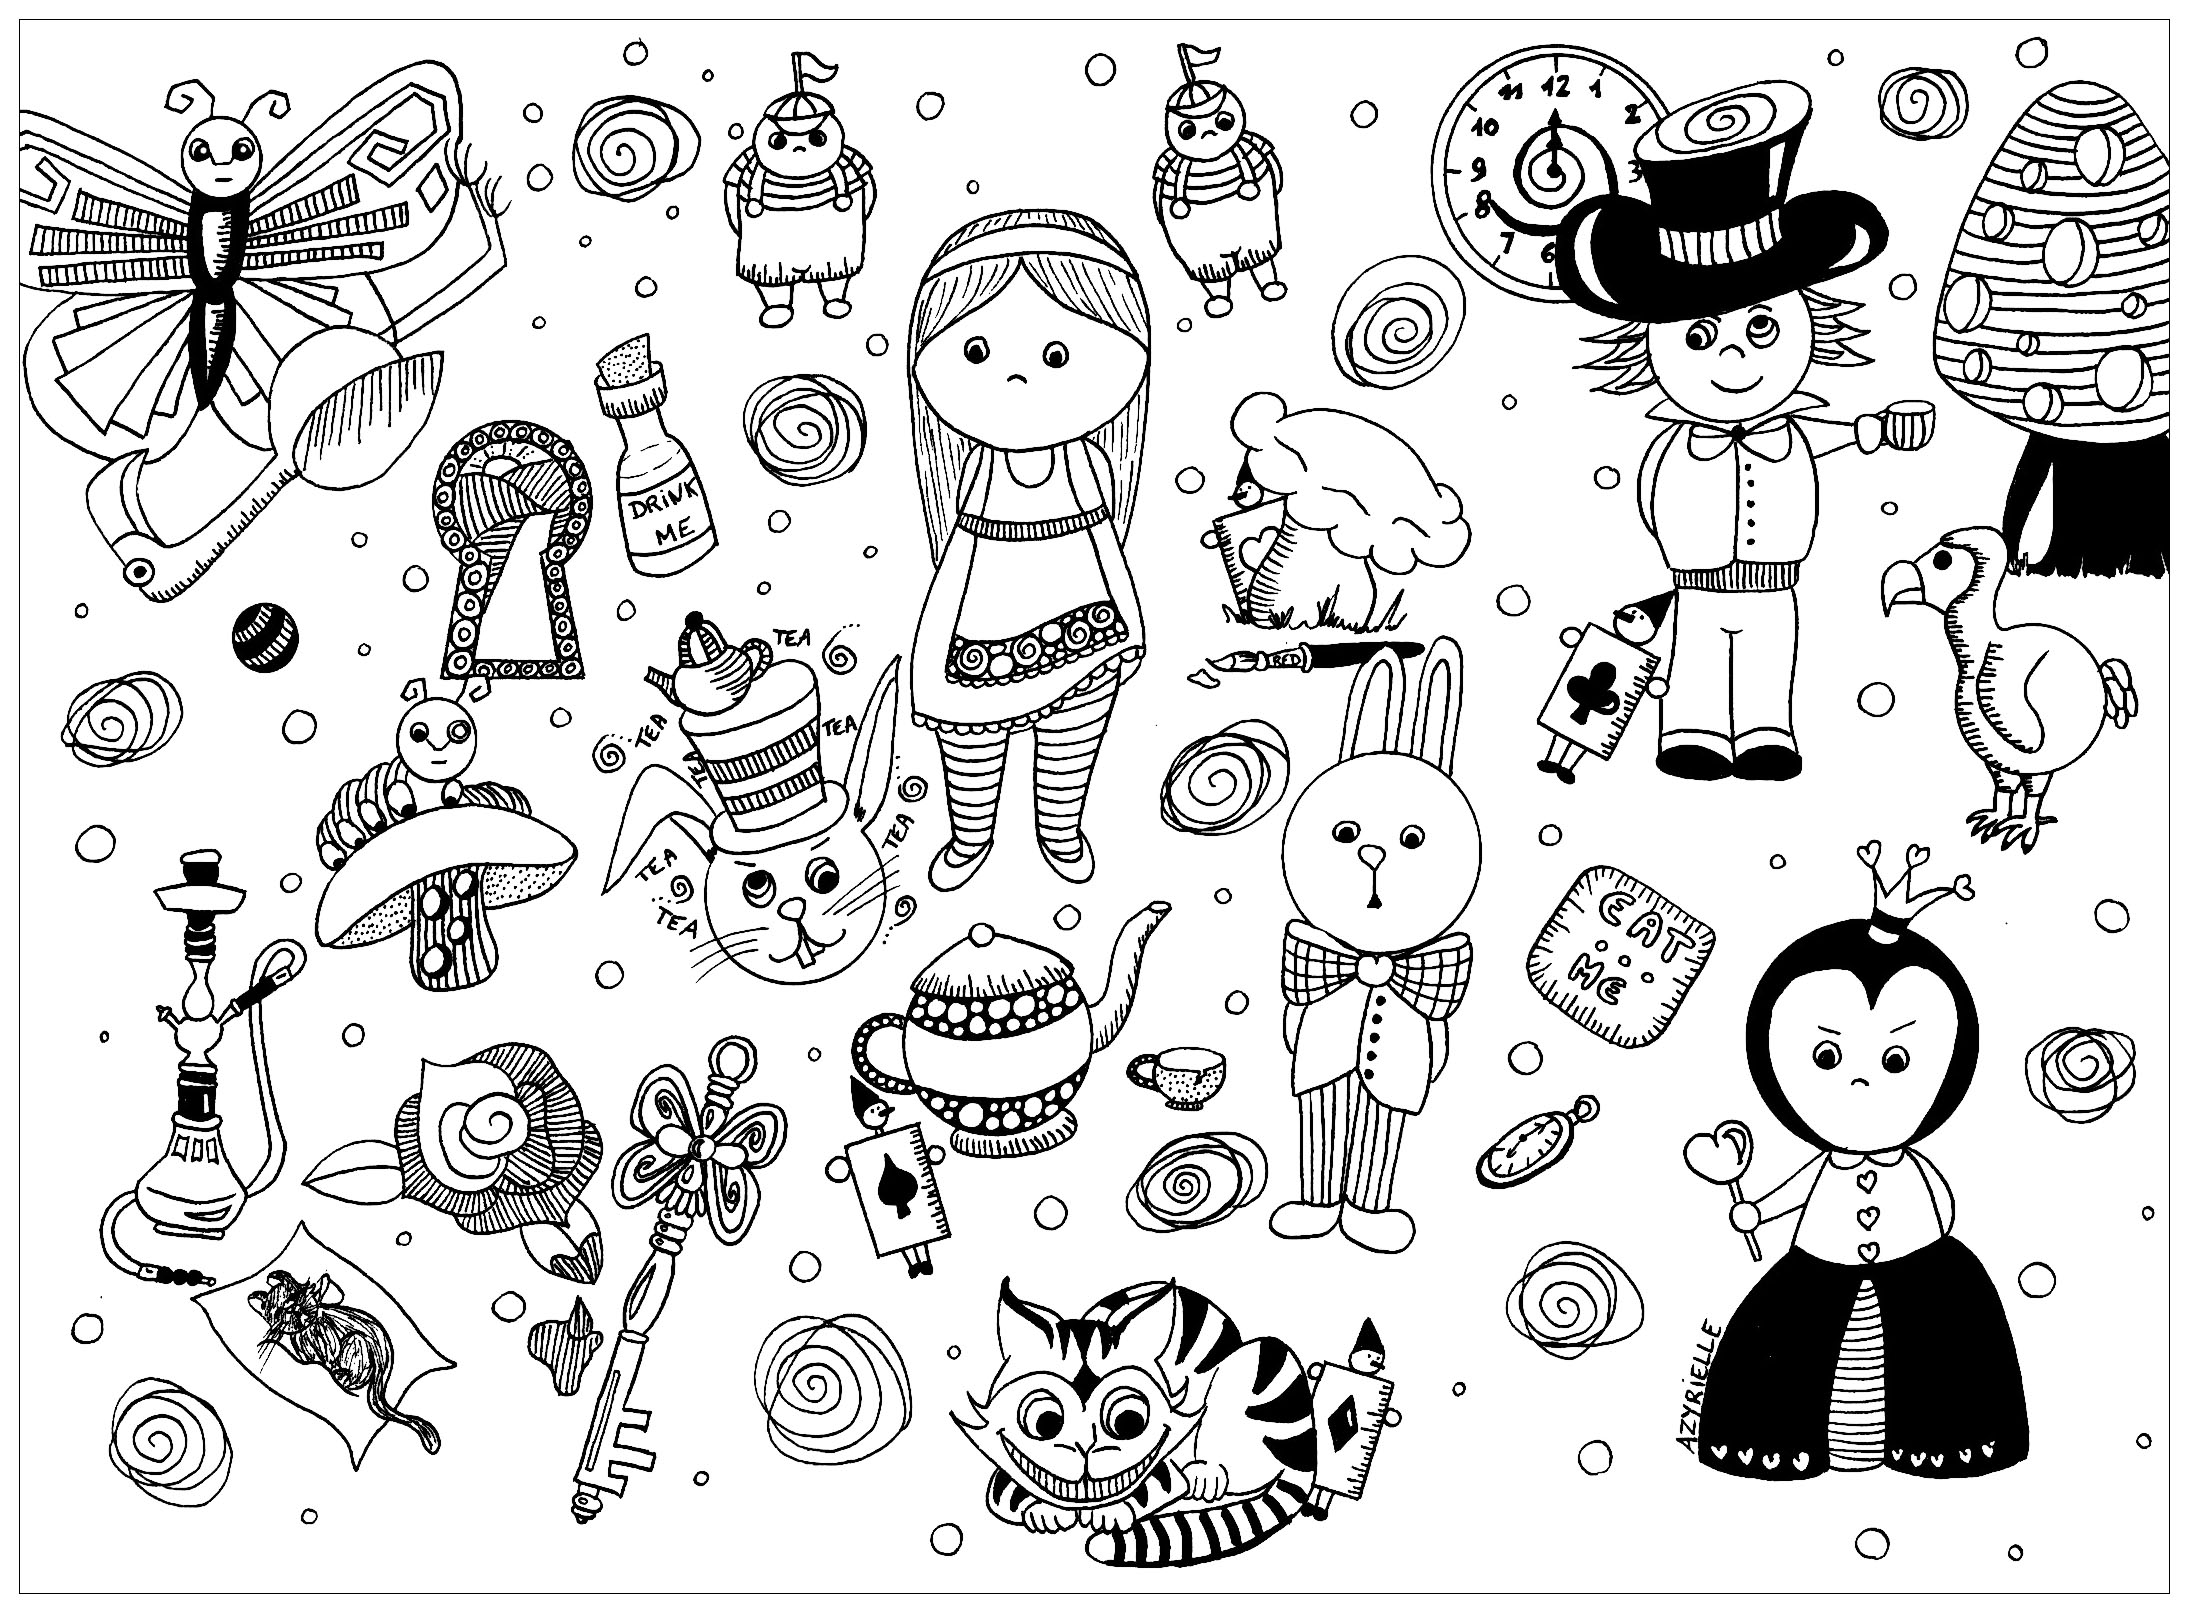 Dibujos para colorear gratis de Arte doodle para descargar, para niños